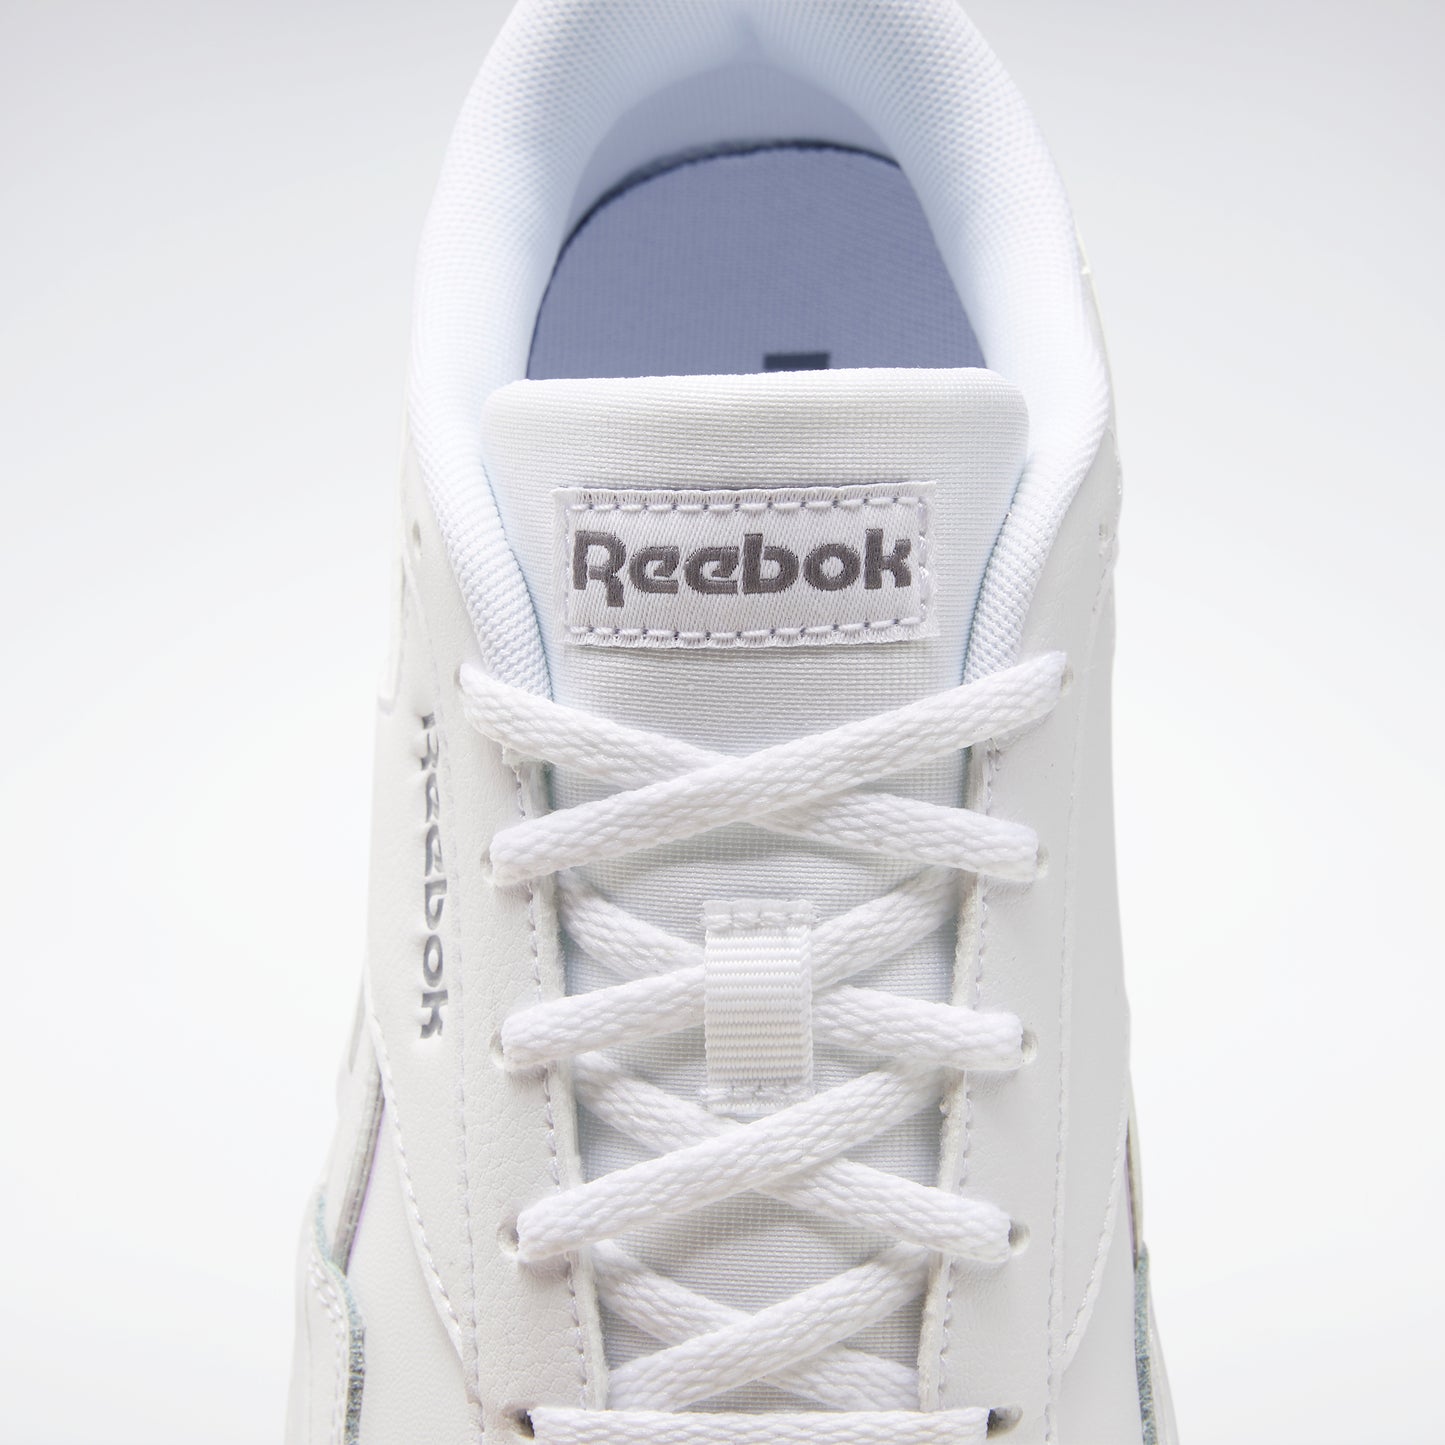 Reebok Footwear Women Reebok Royal Techque T Bold Shoes White/Cdgry5/White